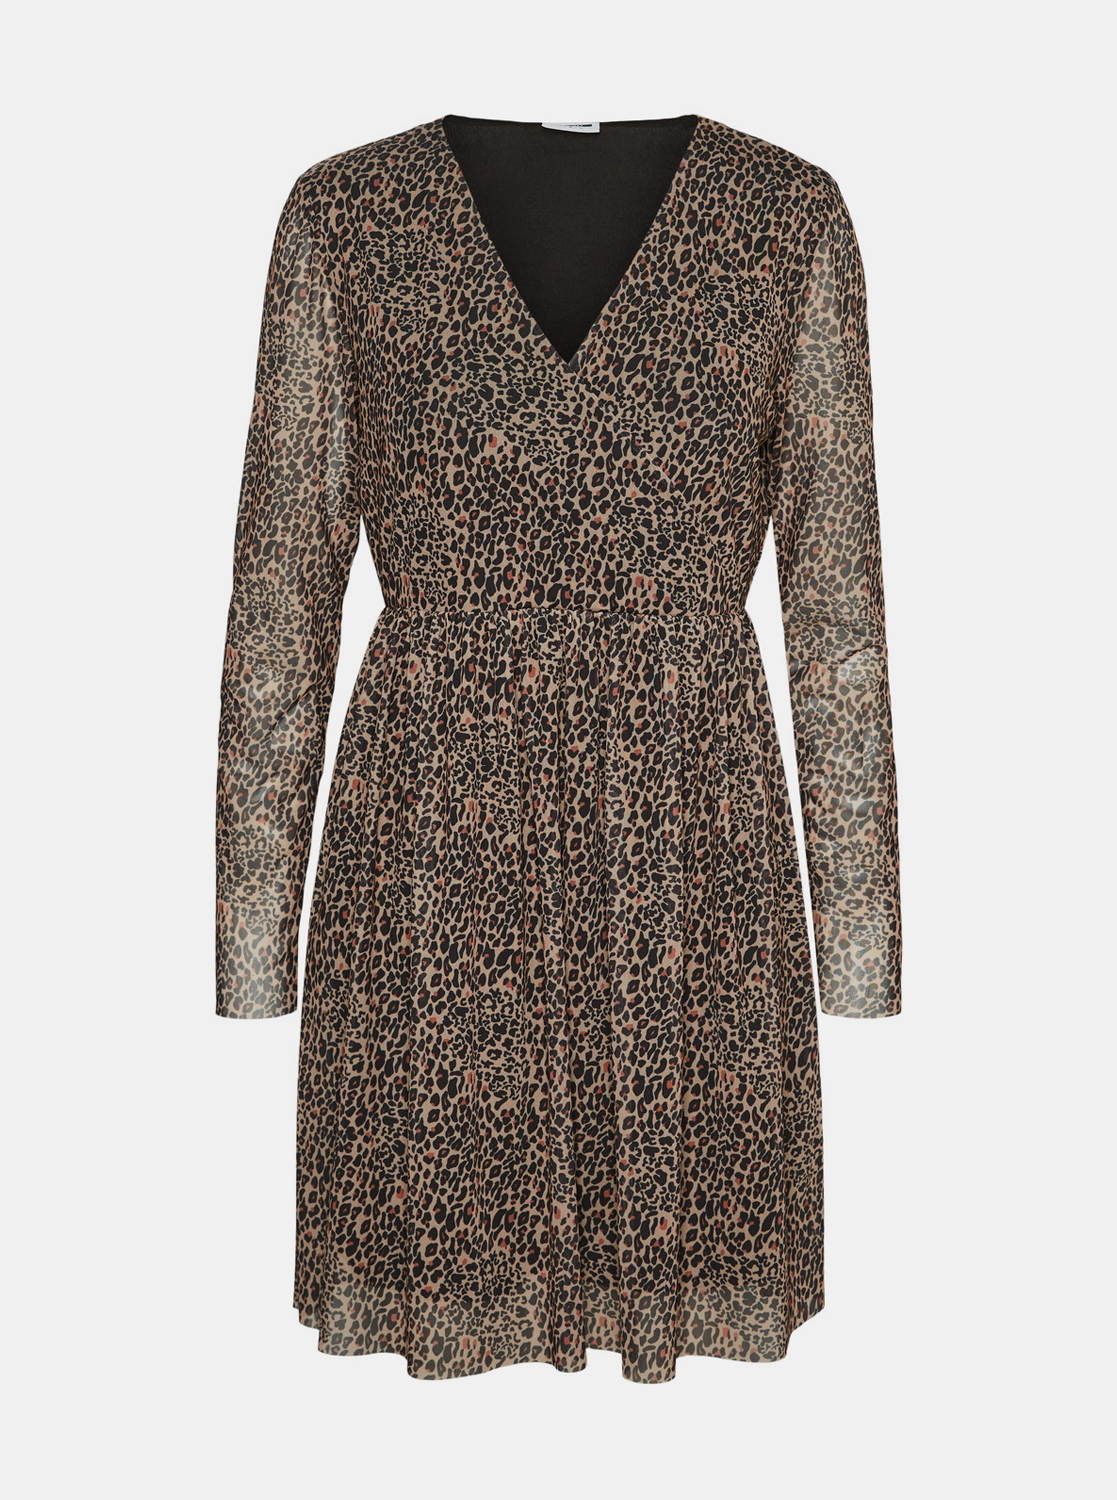 Béžové šaty s leopardím vzorem Noisy May Lesly